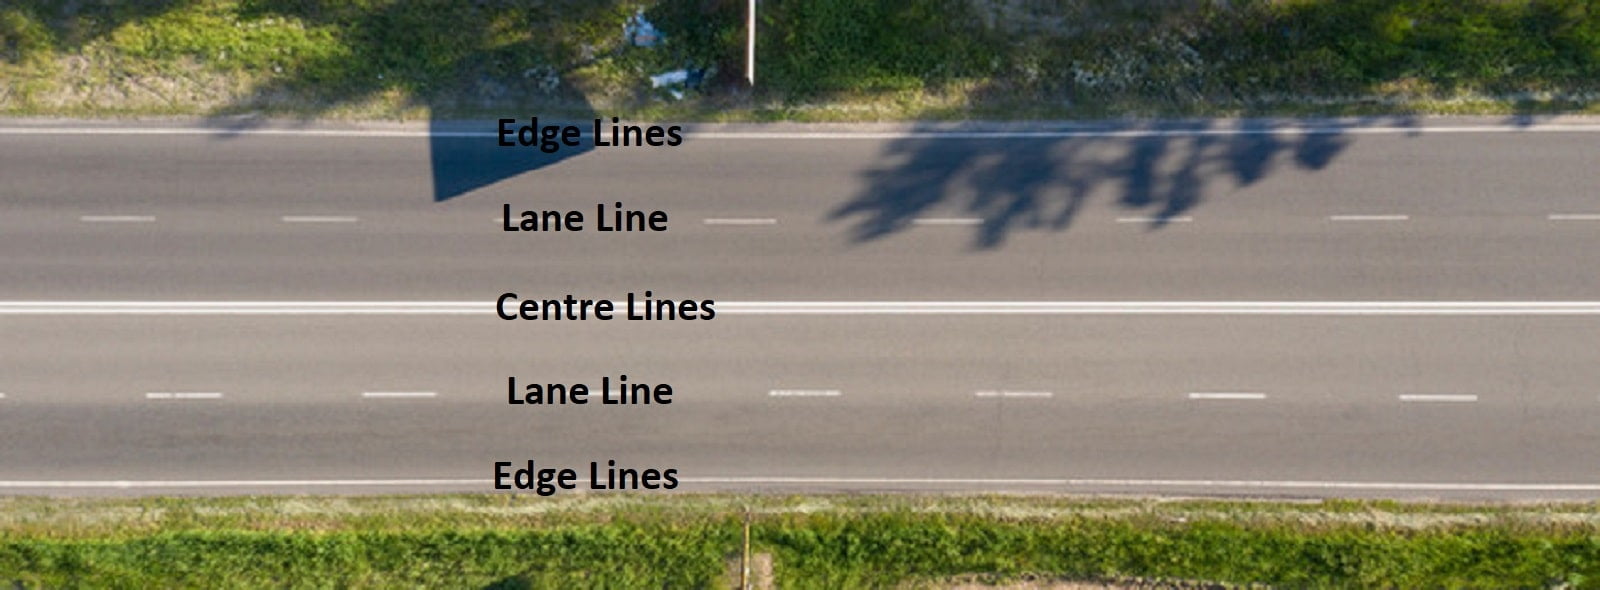 Centre Lines Edge Lines Lane Line -min